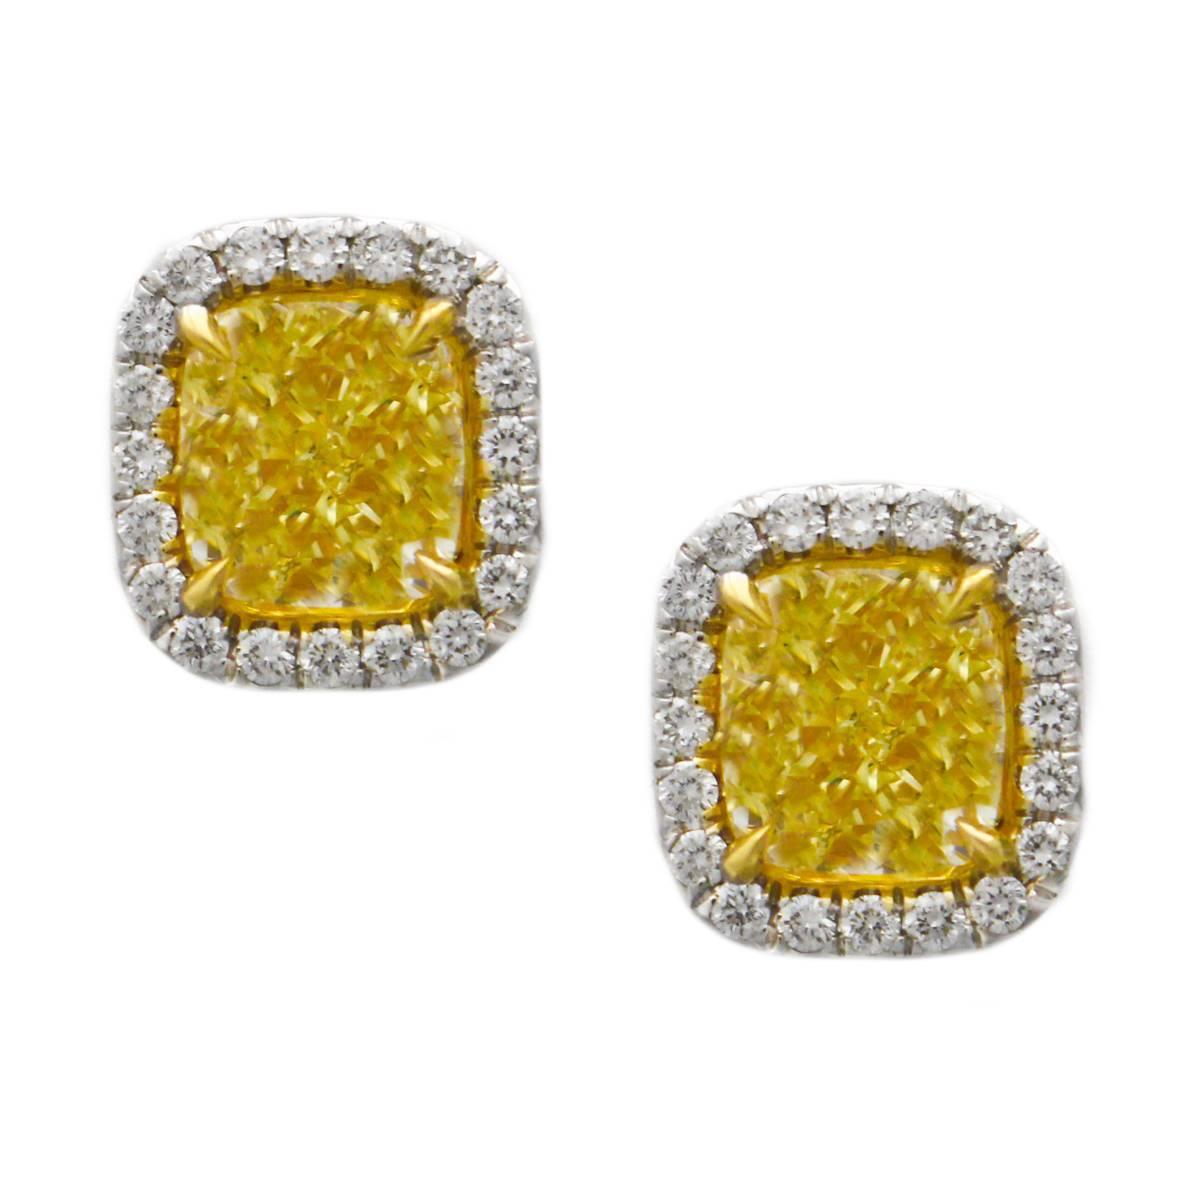 3.20 Carats Fancy Yellow Diamond Stud Earrings 